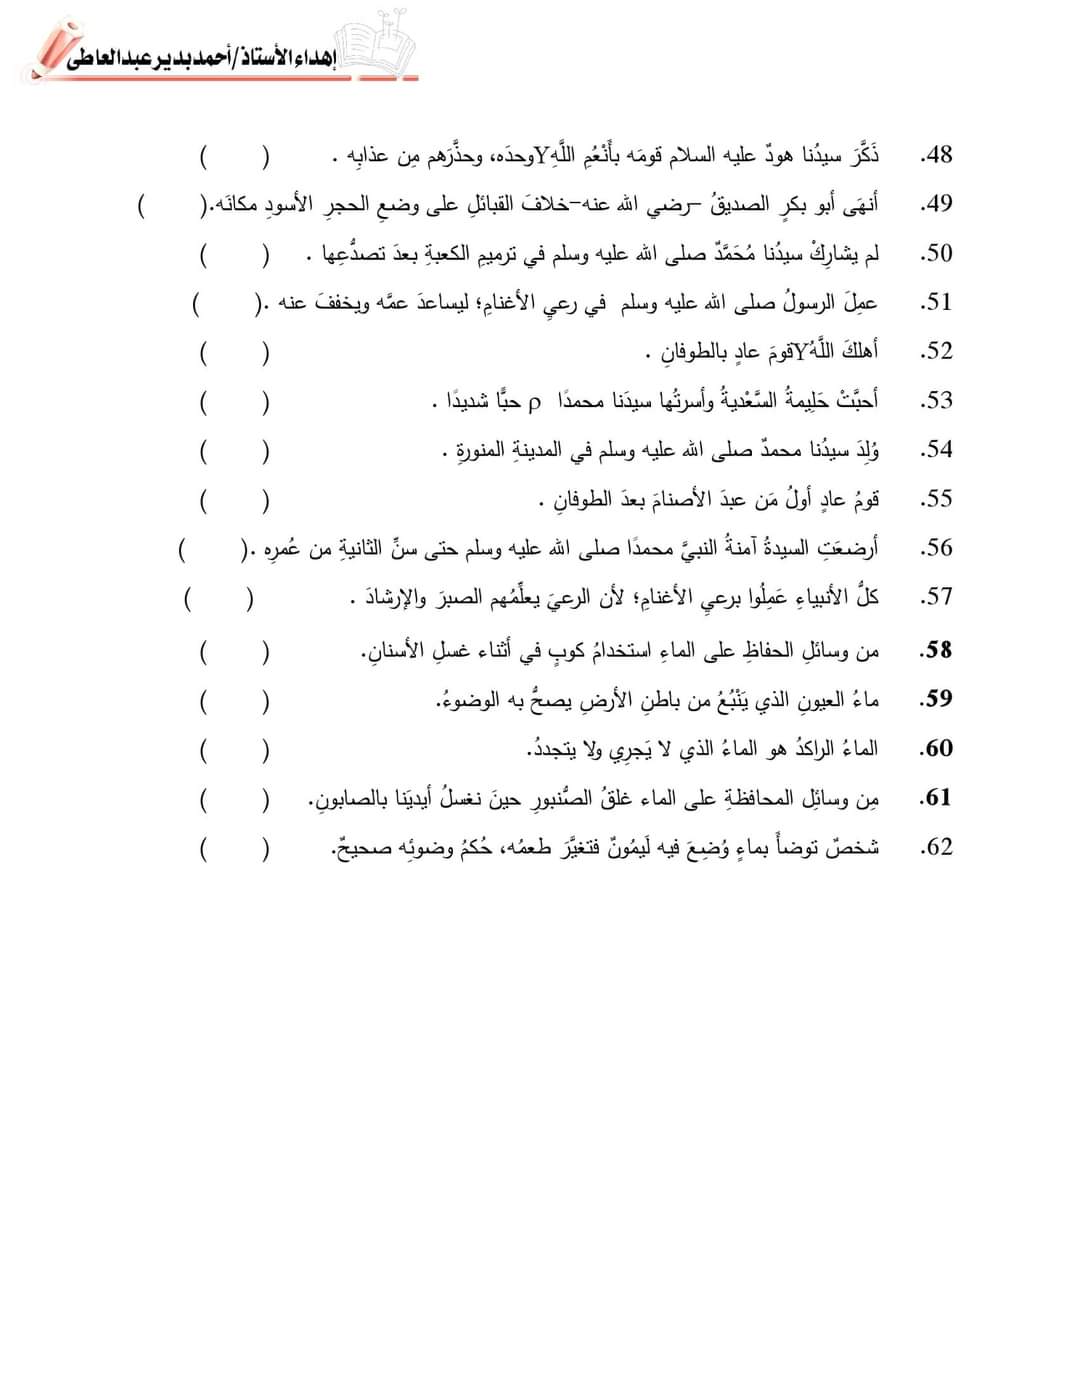 مراجعة ليلة الامتحان التربية الاسلامية رابعة ابتدائي - اسئلة الوزارة تربية اسلامية رابعة